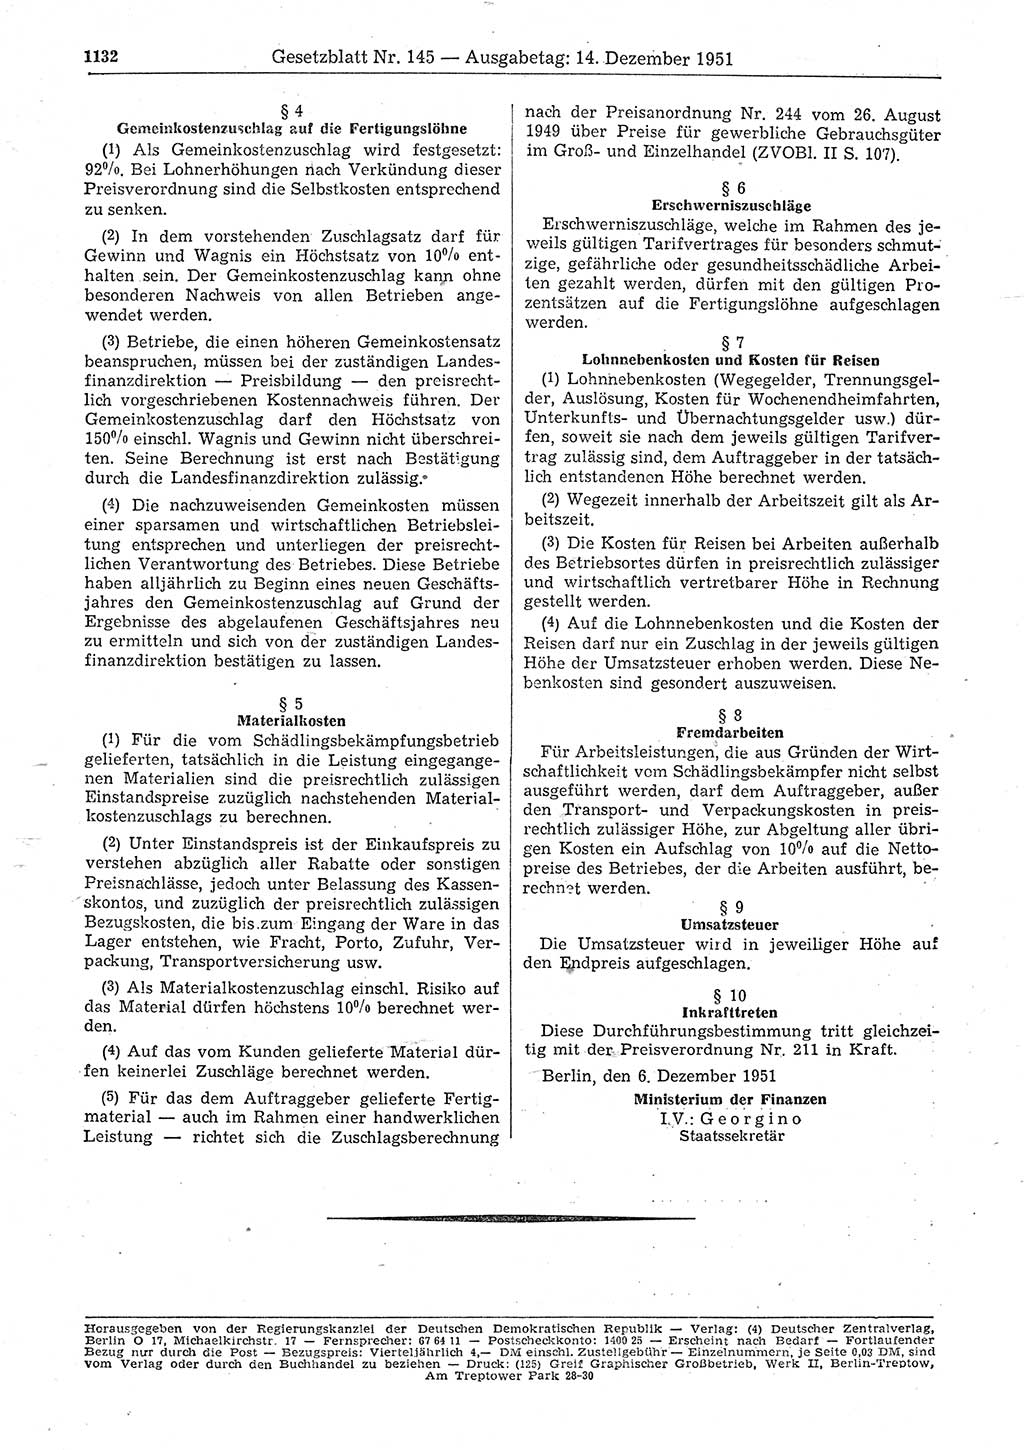 Gesetzblatt (GBl.) der Deutschen Demokratischen Republik (DDR) 1951, Seite 1132 (GBl. DDR 1951, S. 1132)